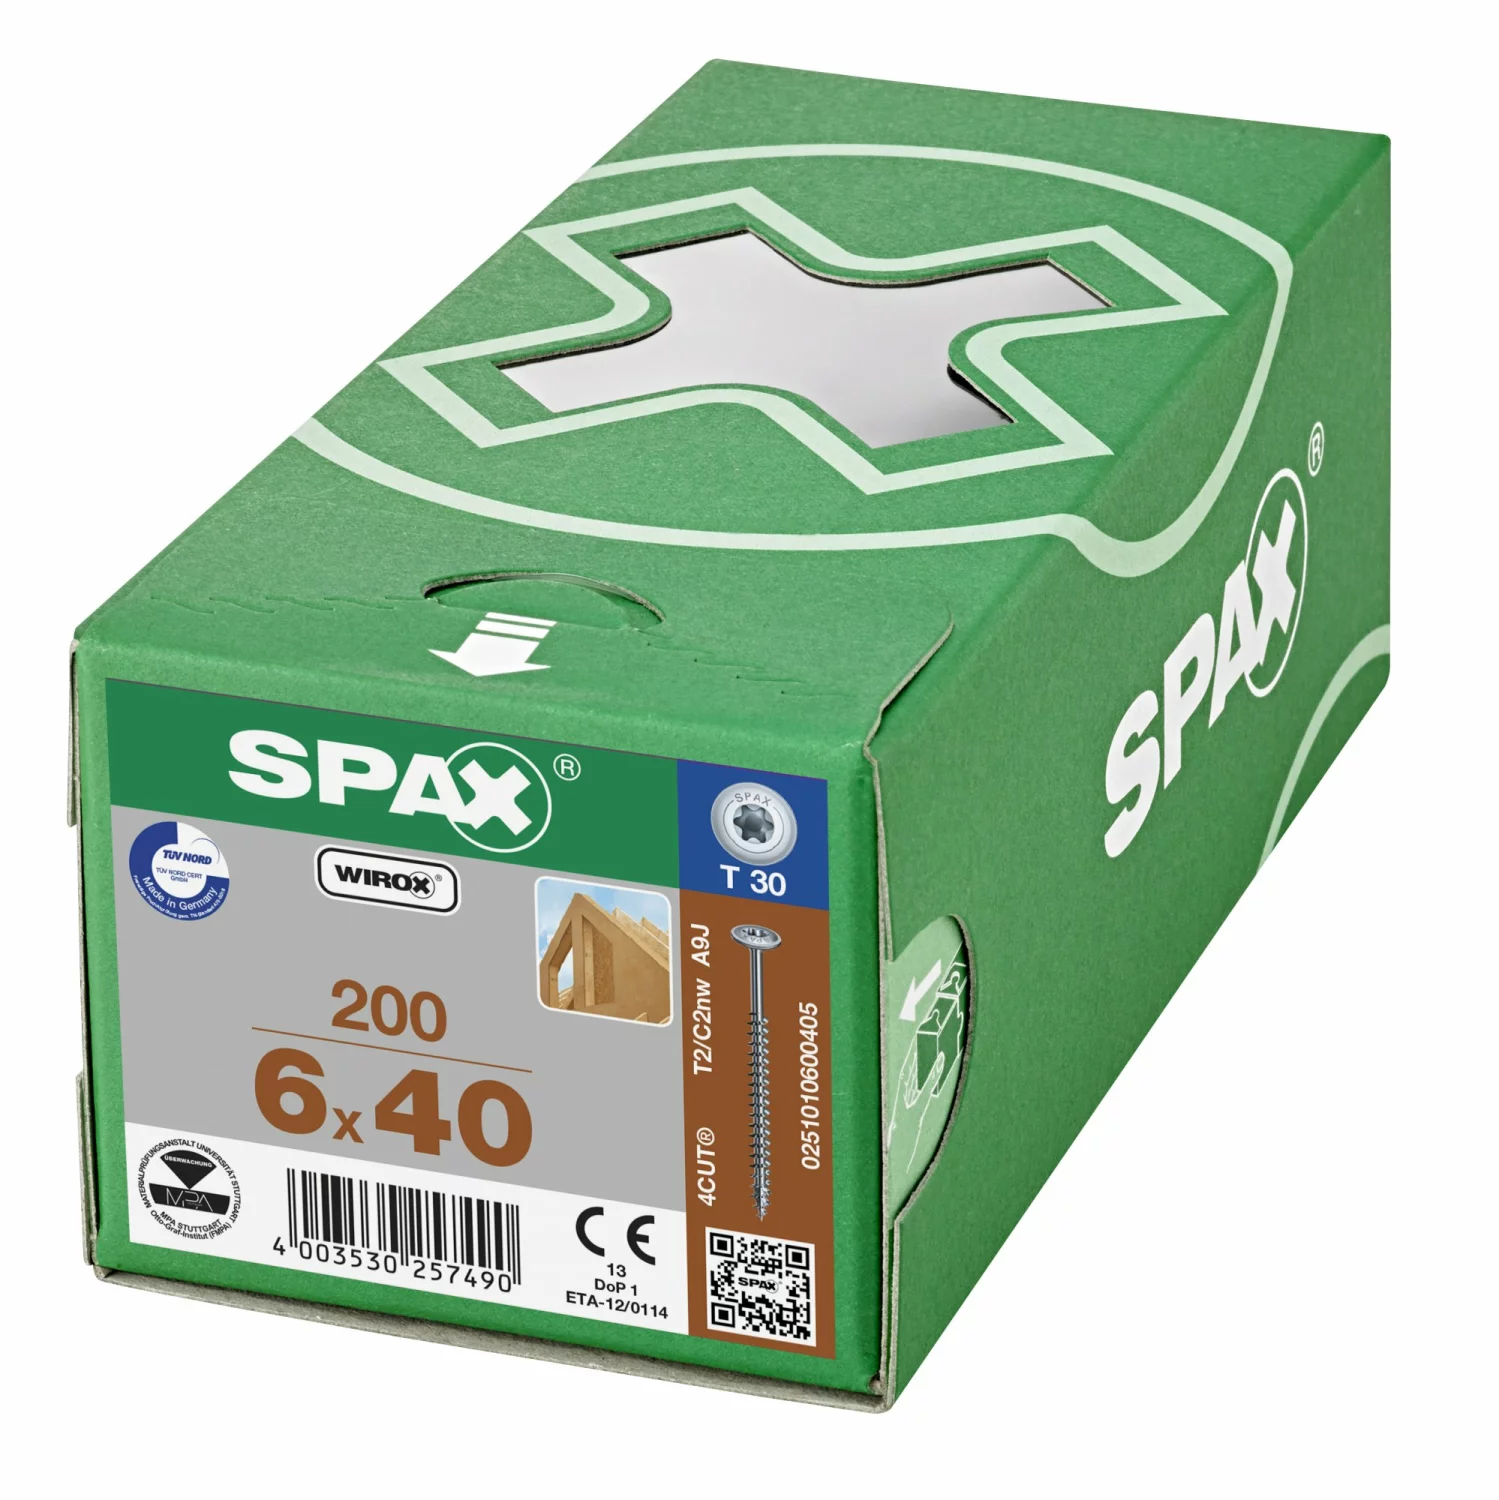 SPAX 251010600405 - HI.FORCE, 6 x 40 mm, 200 pièces, Tête centrante, Tête disque, T-STAR plus T30, 4CUT, WIROX-image